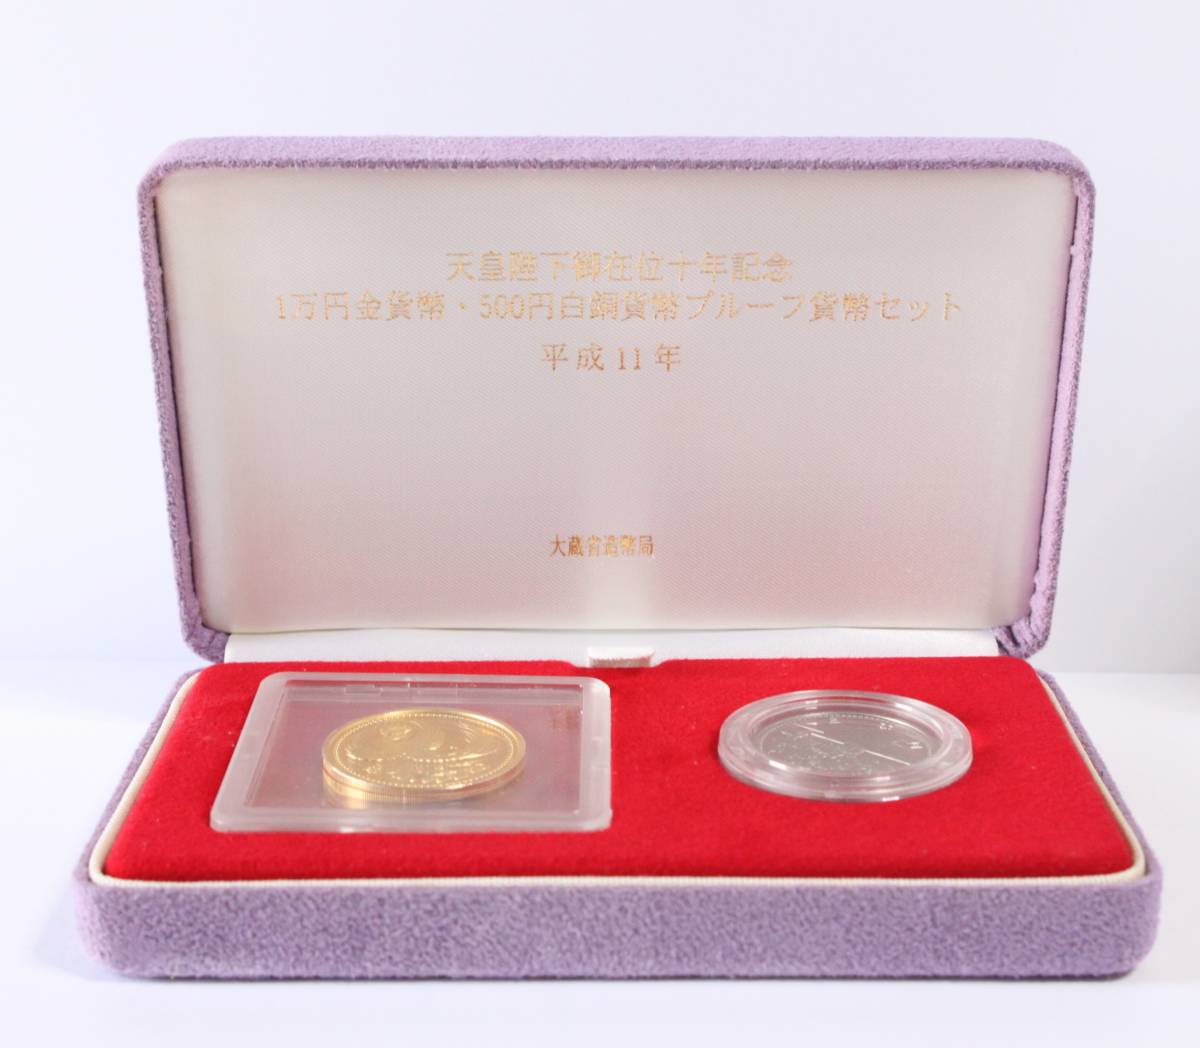 天皇御在位30年プルーフ「1万円金貨・500円硬貨」2点セット